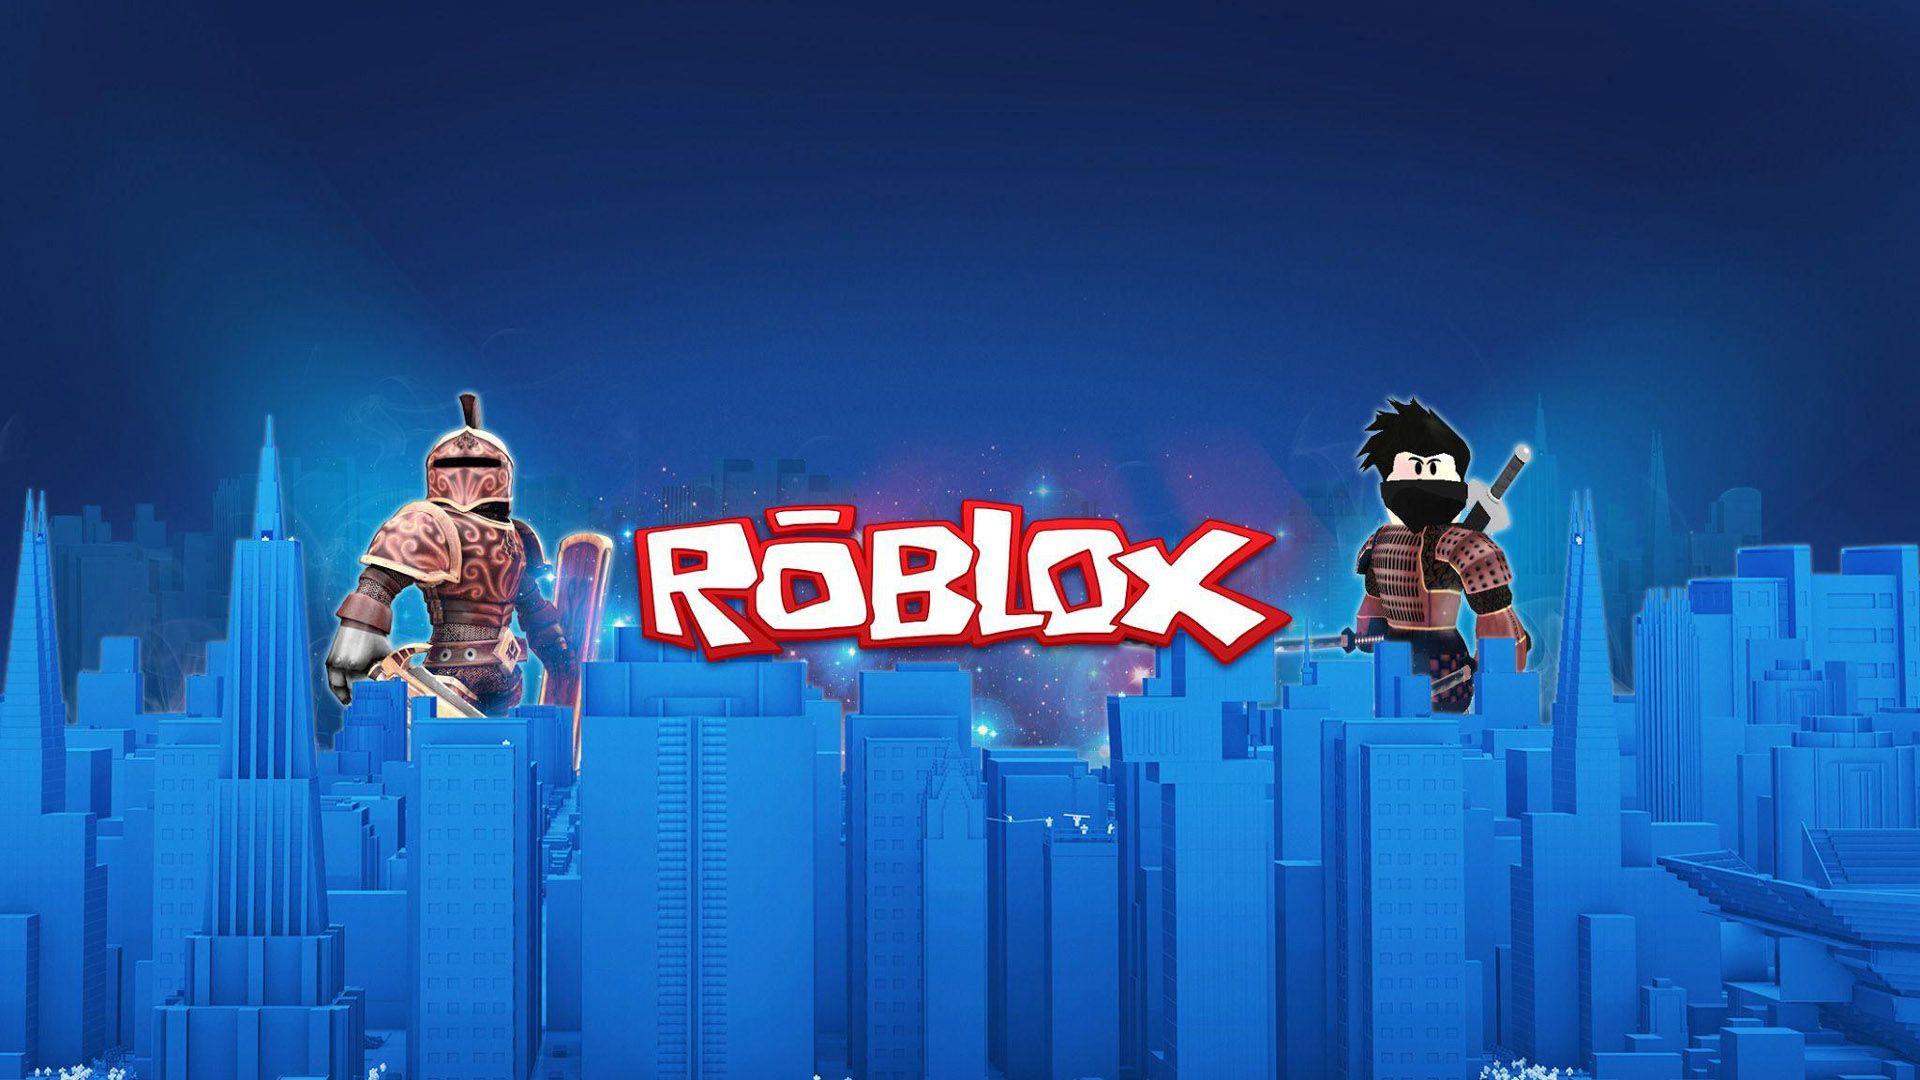 Bộ sưu tập hình nền laptop Roblox màu xanh đậm sẽ mang đến cho bạn cảm giác thư giãn và dễ chịu. Với Roblox Blue Aesthetic, bạn sẽ được trải nghiệm những game đa dạng và phong phú, đồng thời thăng hoa với thế giới màu sắc tươi vui. Hãy đến xem ngay!